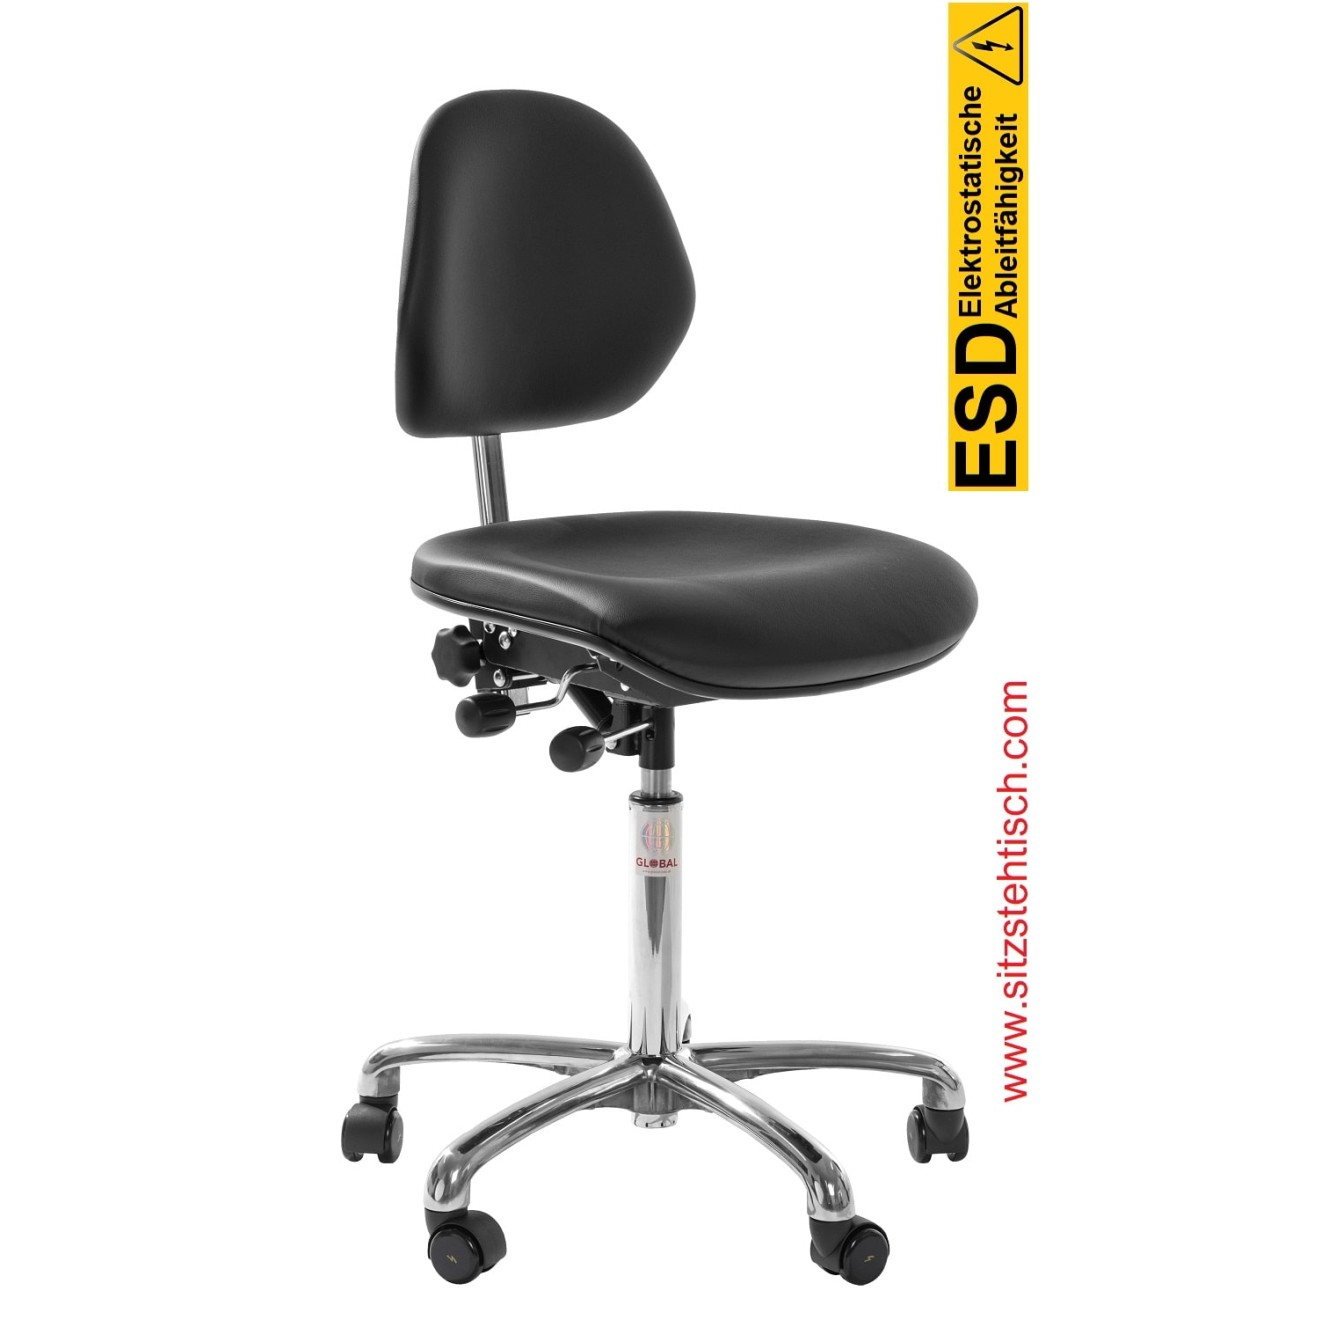 ESD-Drehstuhl "Aktiv ESD" - Sitz und Rückenlehne sind mit Kunstleder bezogen, Neigung Sitz und Rückenlehne stufenlos verstellbar, Fußkreuz aus Aluminium, elektrisch leitfähige Rollen Ø 50 mm - 5 Jahre Garantie